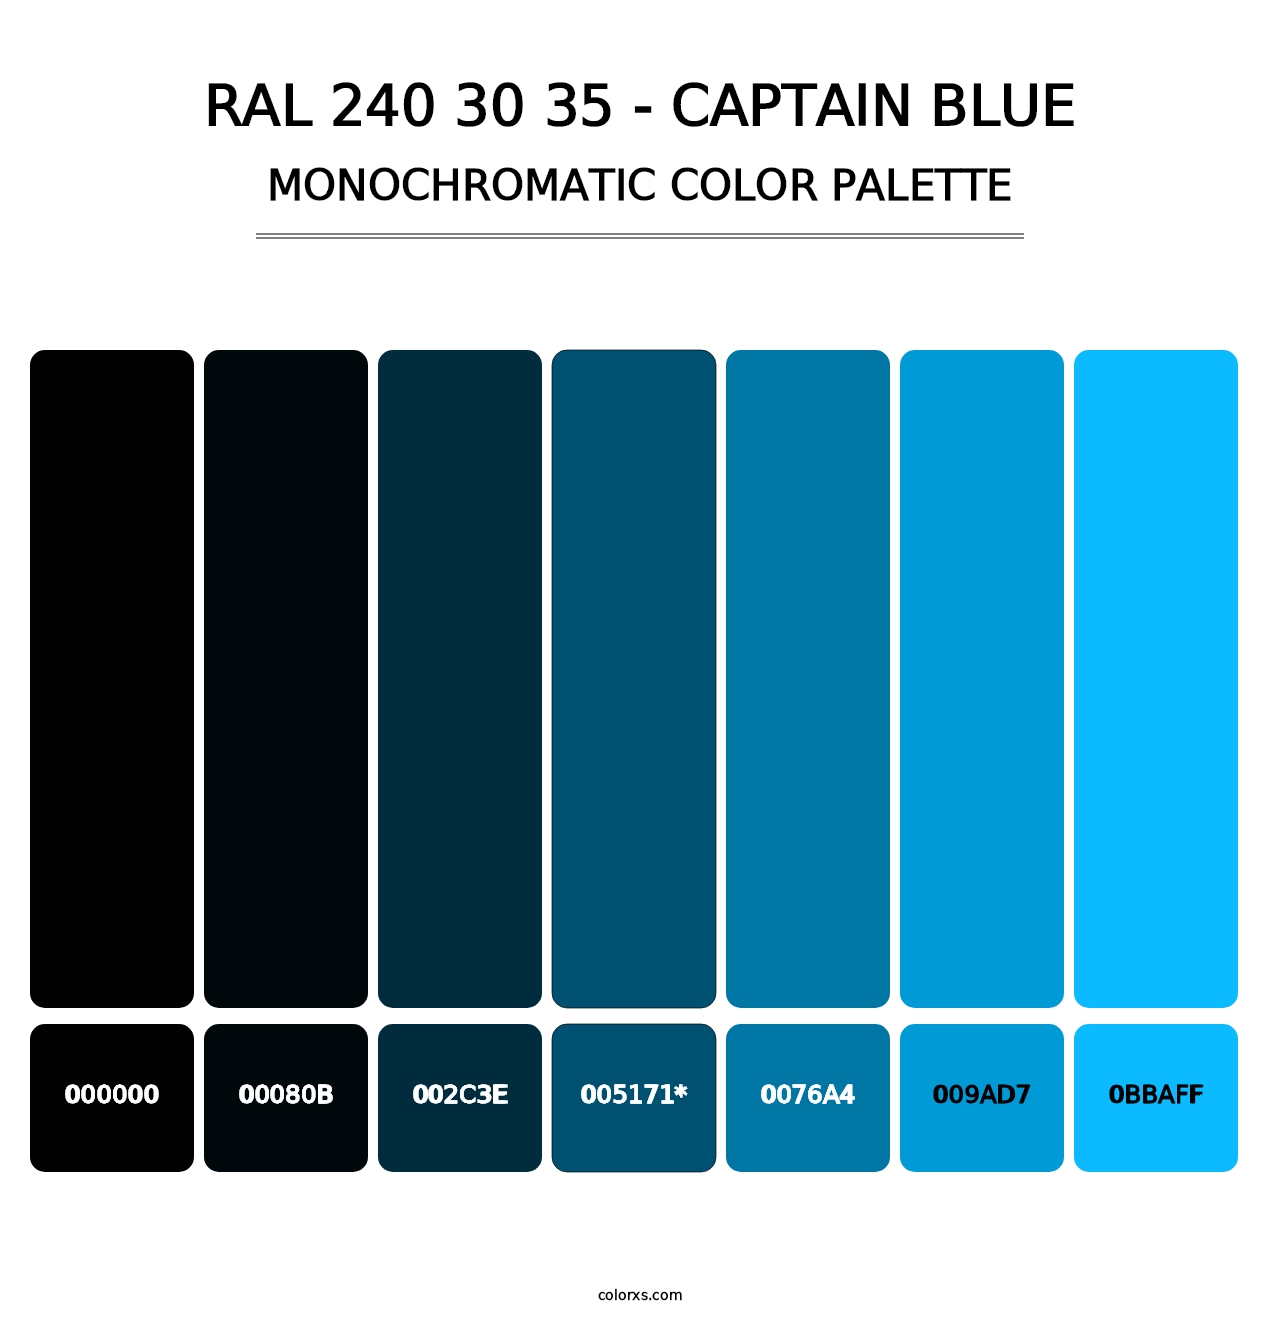 RAL 240 30 35 - Captain Blue - Monochromatic Color Palette